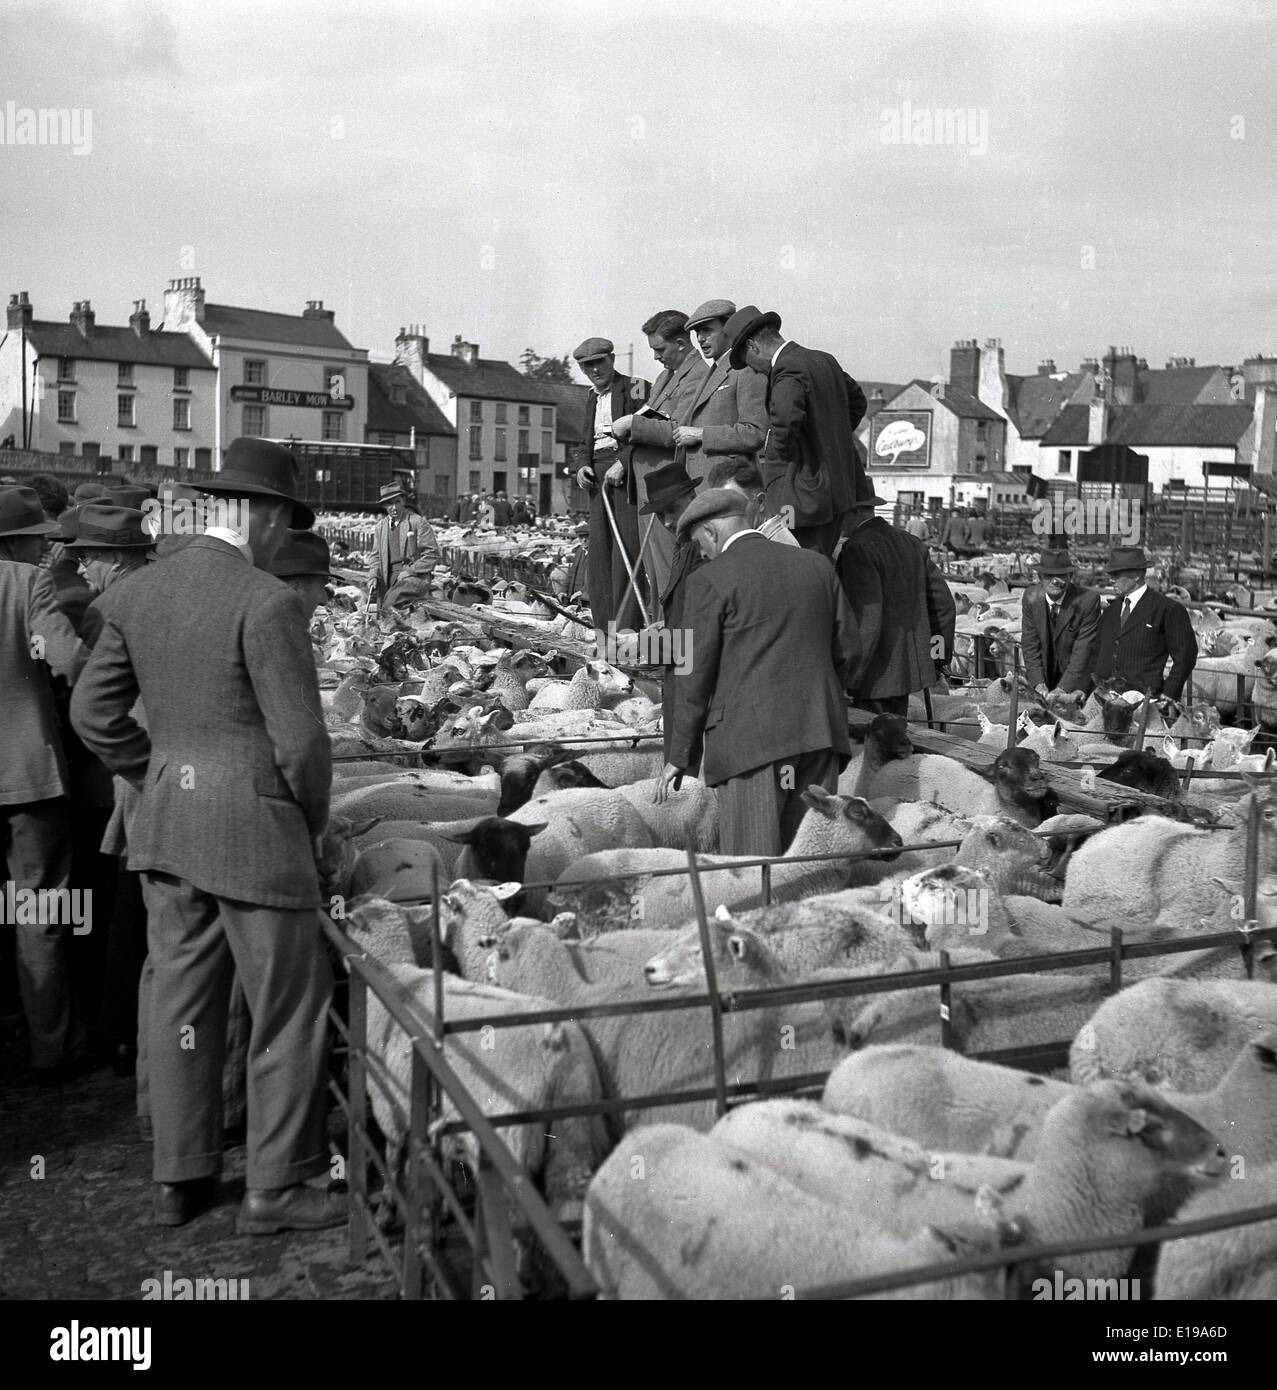 Années 1950, tableau historique du bien-habillés en dehors de l'achat de moutons agriculteurs adapté à une vente aux enchères à un marché de bétail dans une ville à la campagne. Banque D'Images